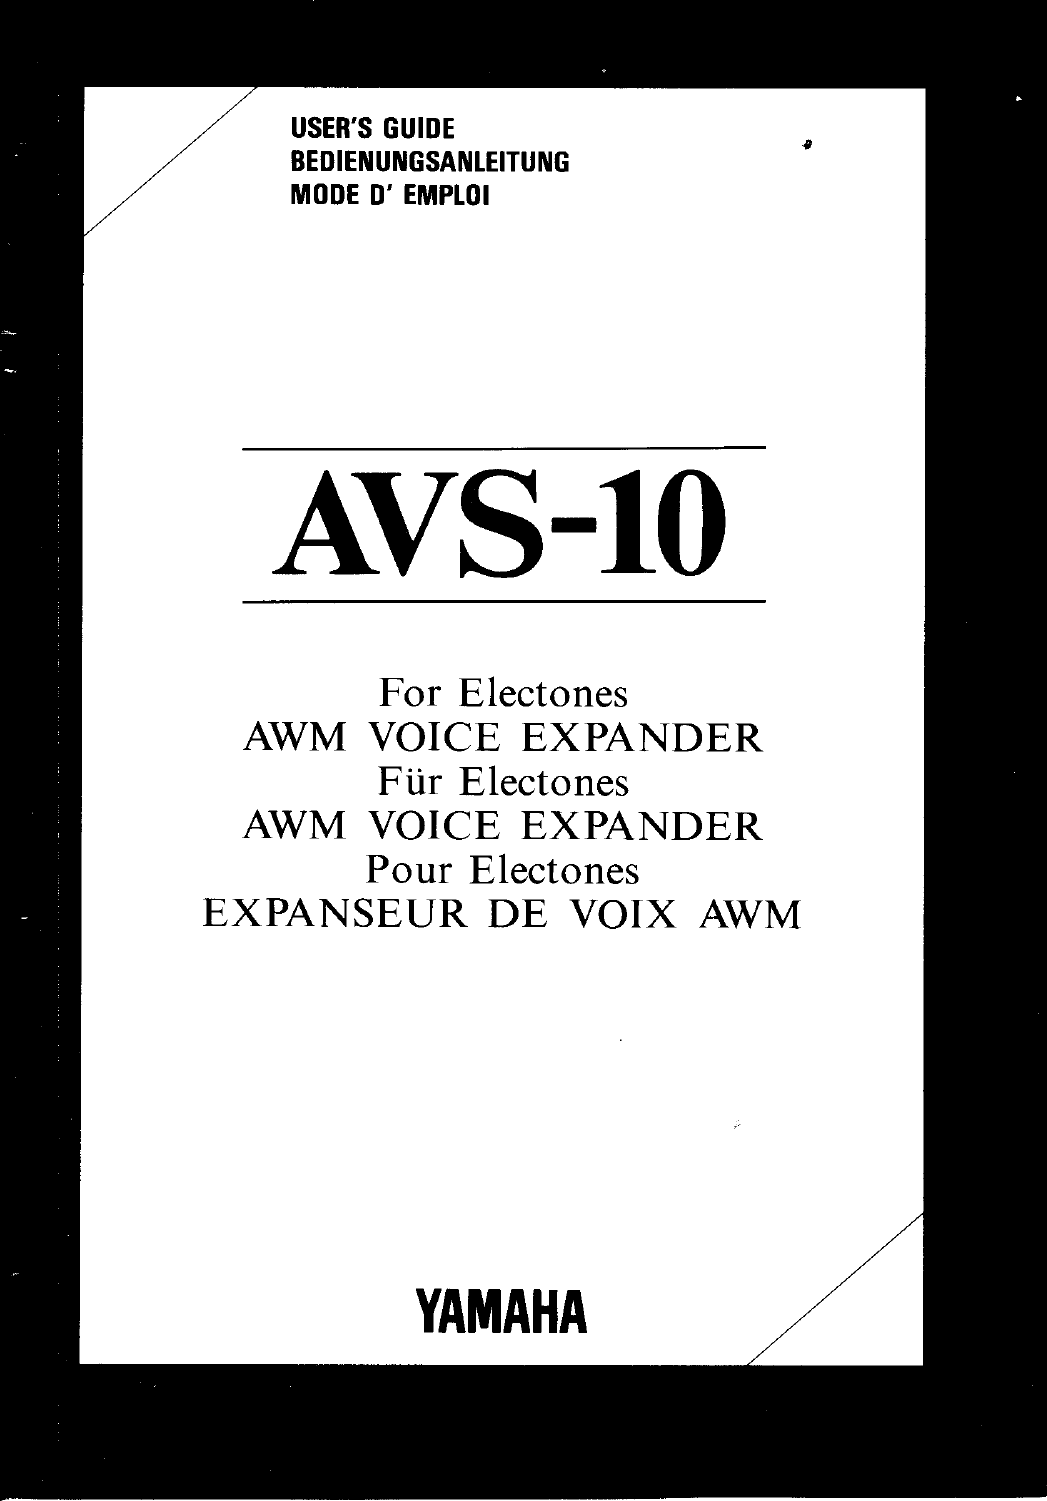 Yamaha AVS 10 Owner's Manual (Image) AVS10E